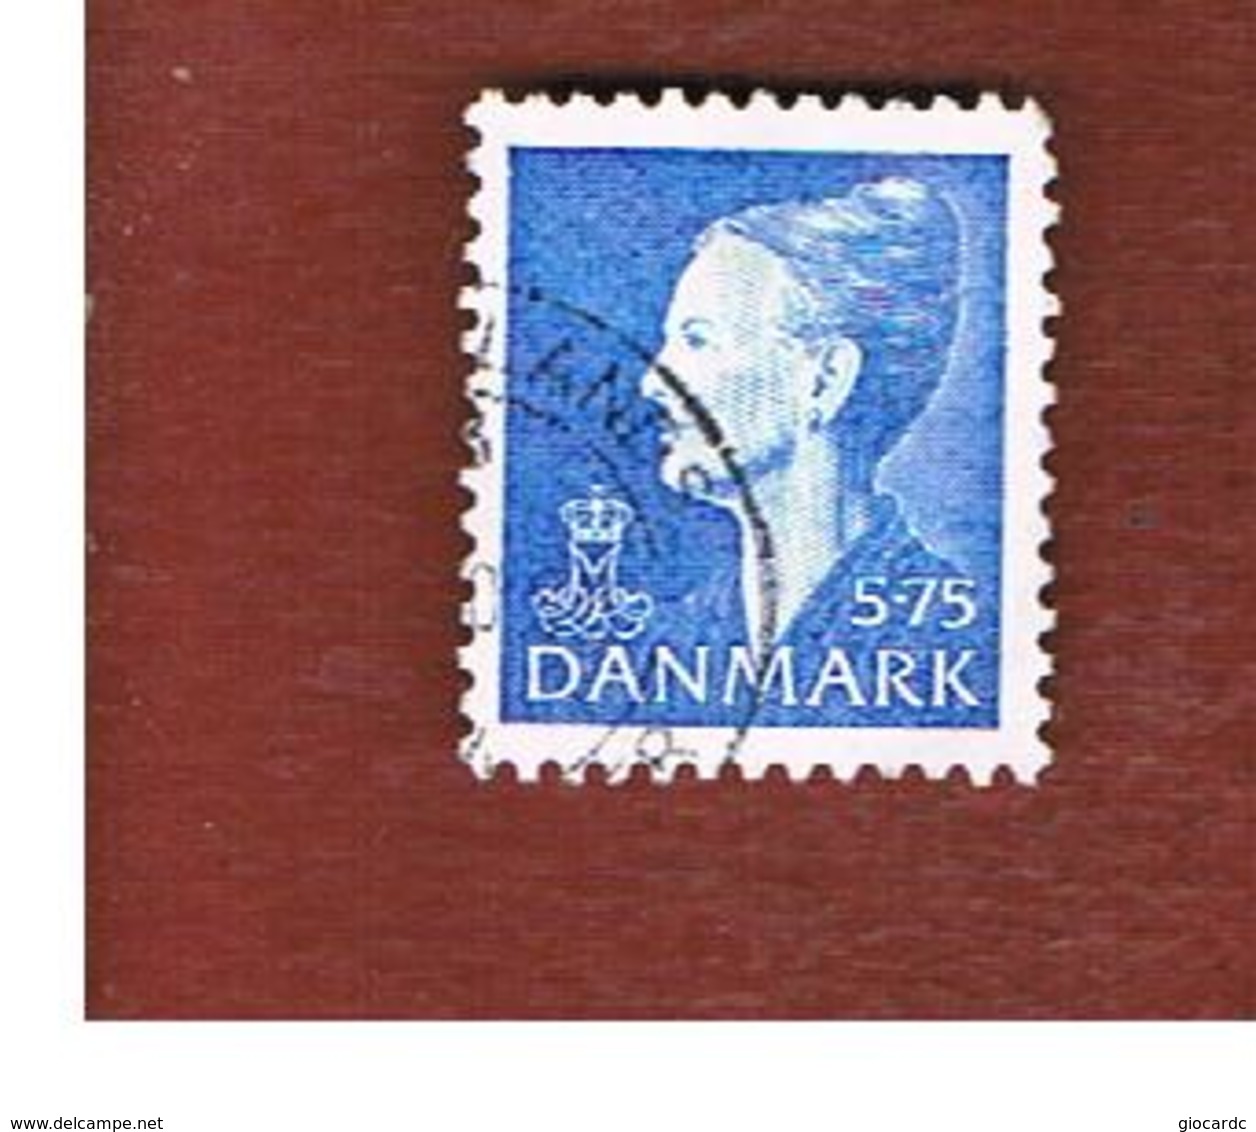 DANIMARCA (DENMARK)  -   SG 1101 -  2000   QUEEN MARGRETHE II   5,75  - USED ° - Gebraucht